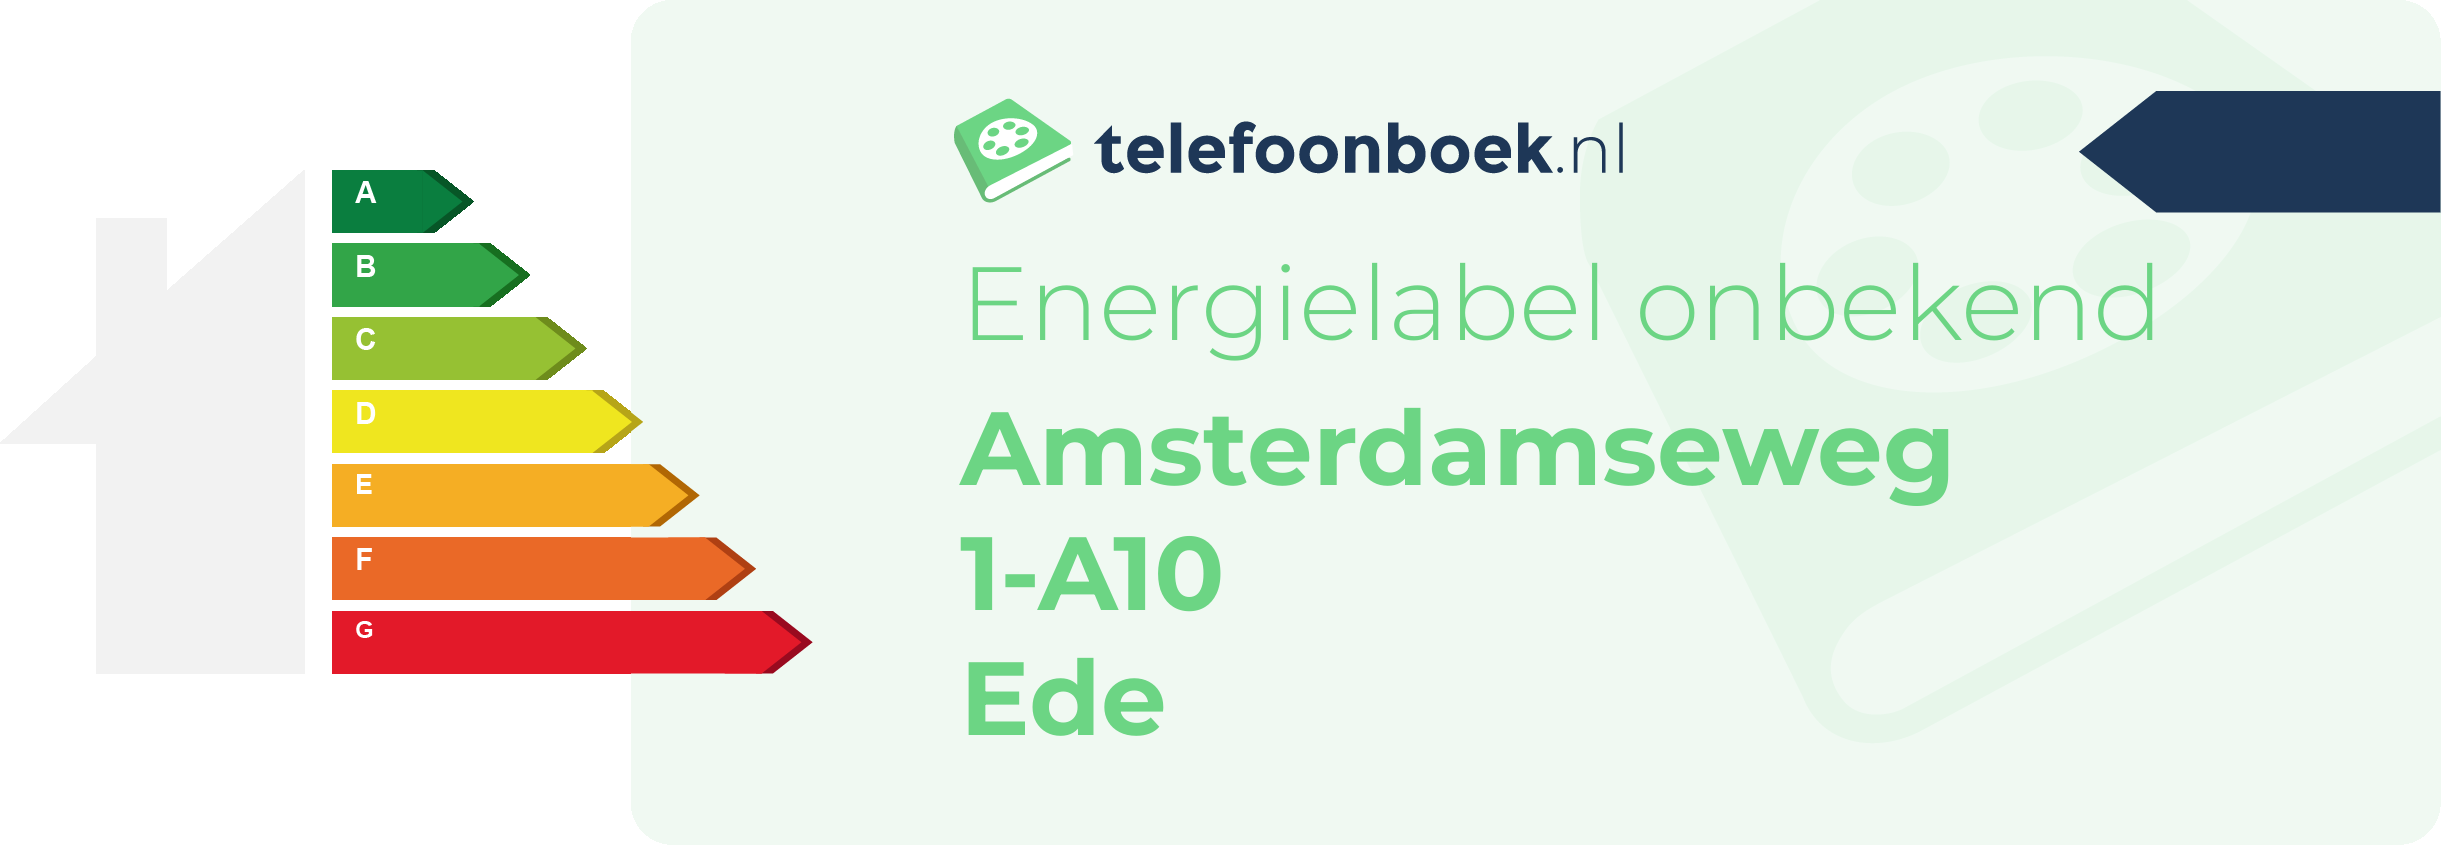 Energielabel Amsterdamseweg 1-A10 Ede